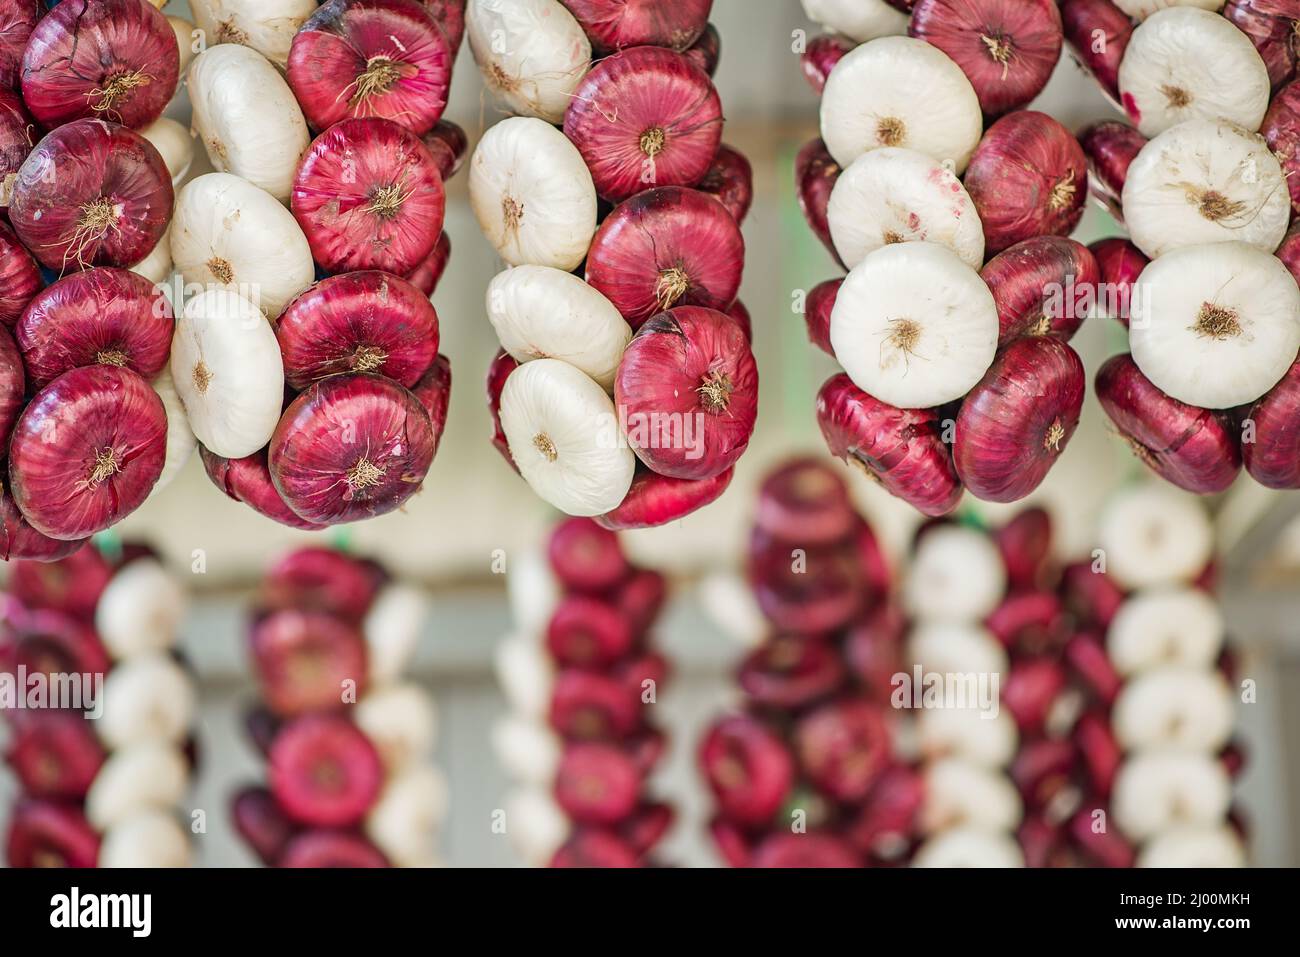 Commercializzazione diretta di treccia di aglio e cipolle appese di fronte, cipolla rossa e bianca Foto Stock